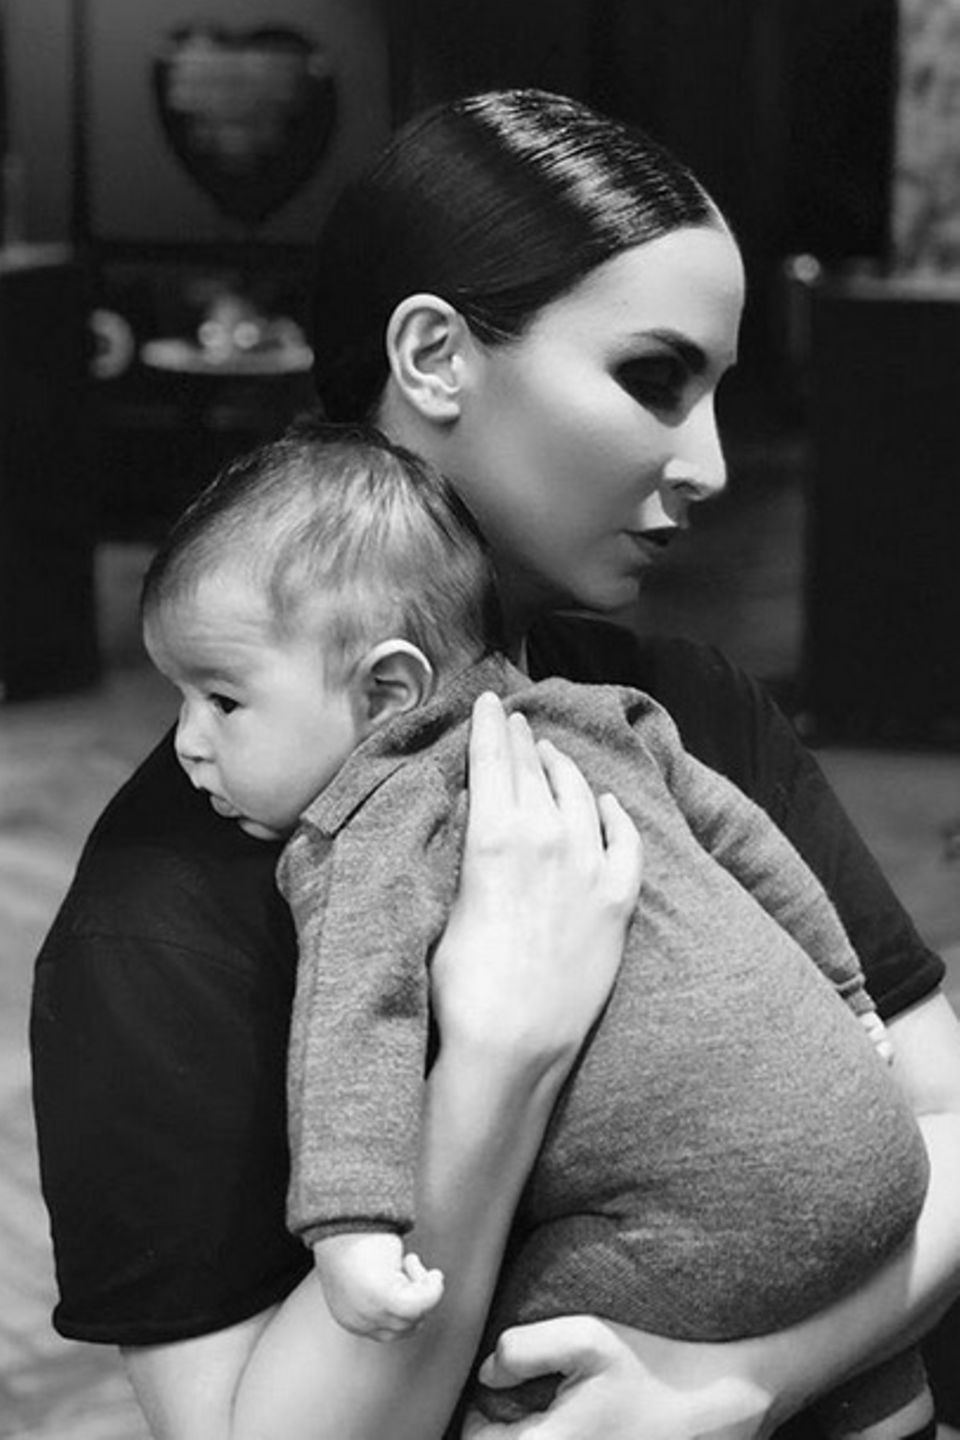 12. Oktober 2018  Auf Instagram teilt Sila Sahin dieses schöne Schwarz-Weiß-Foto und richtet dazu die liebevollen Worte "Trage dich bis ans Ende der Welt wenn es sein muss du bist mein Leben" an ihren Sohn.  